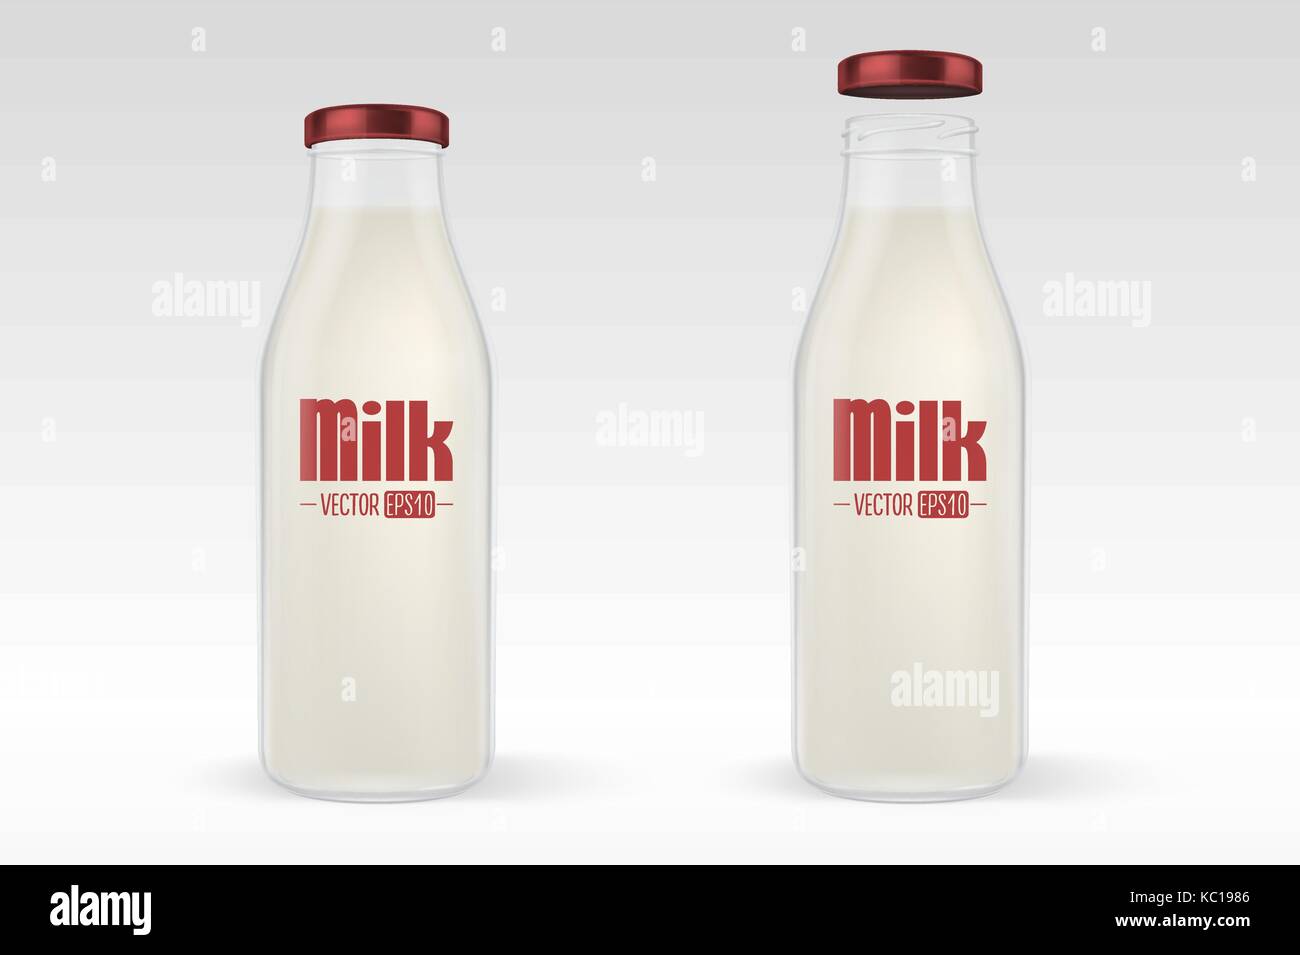 Vektor realistische geschlossenen und offenen Glas voll Milch Flasche mit rotem Deckel closeup auf weißem Hintergrund. Design Template für Werbung, Branding, mockup. EPS 10. Stock Vektor